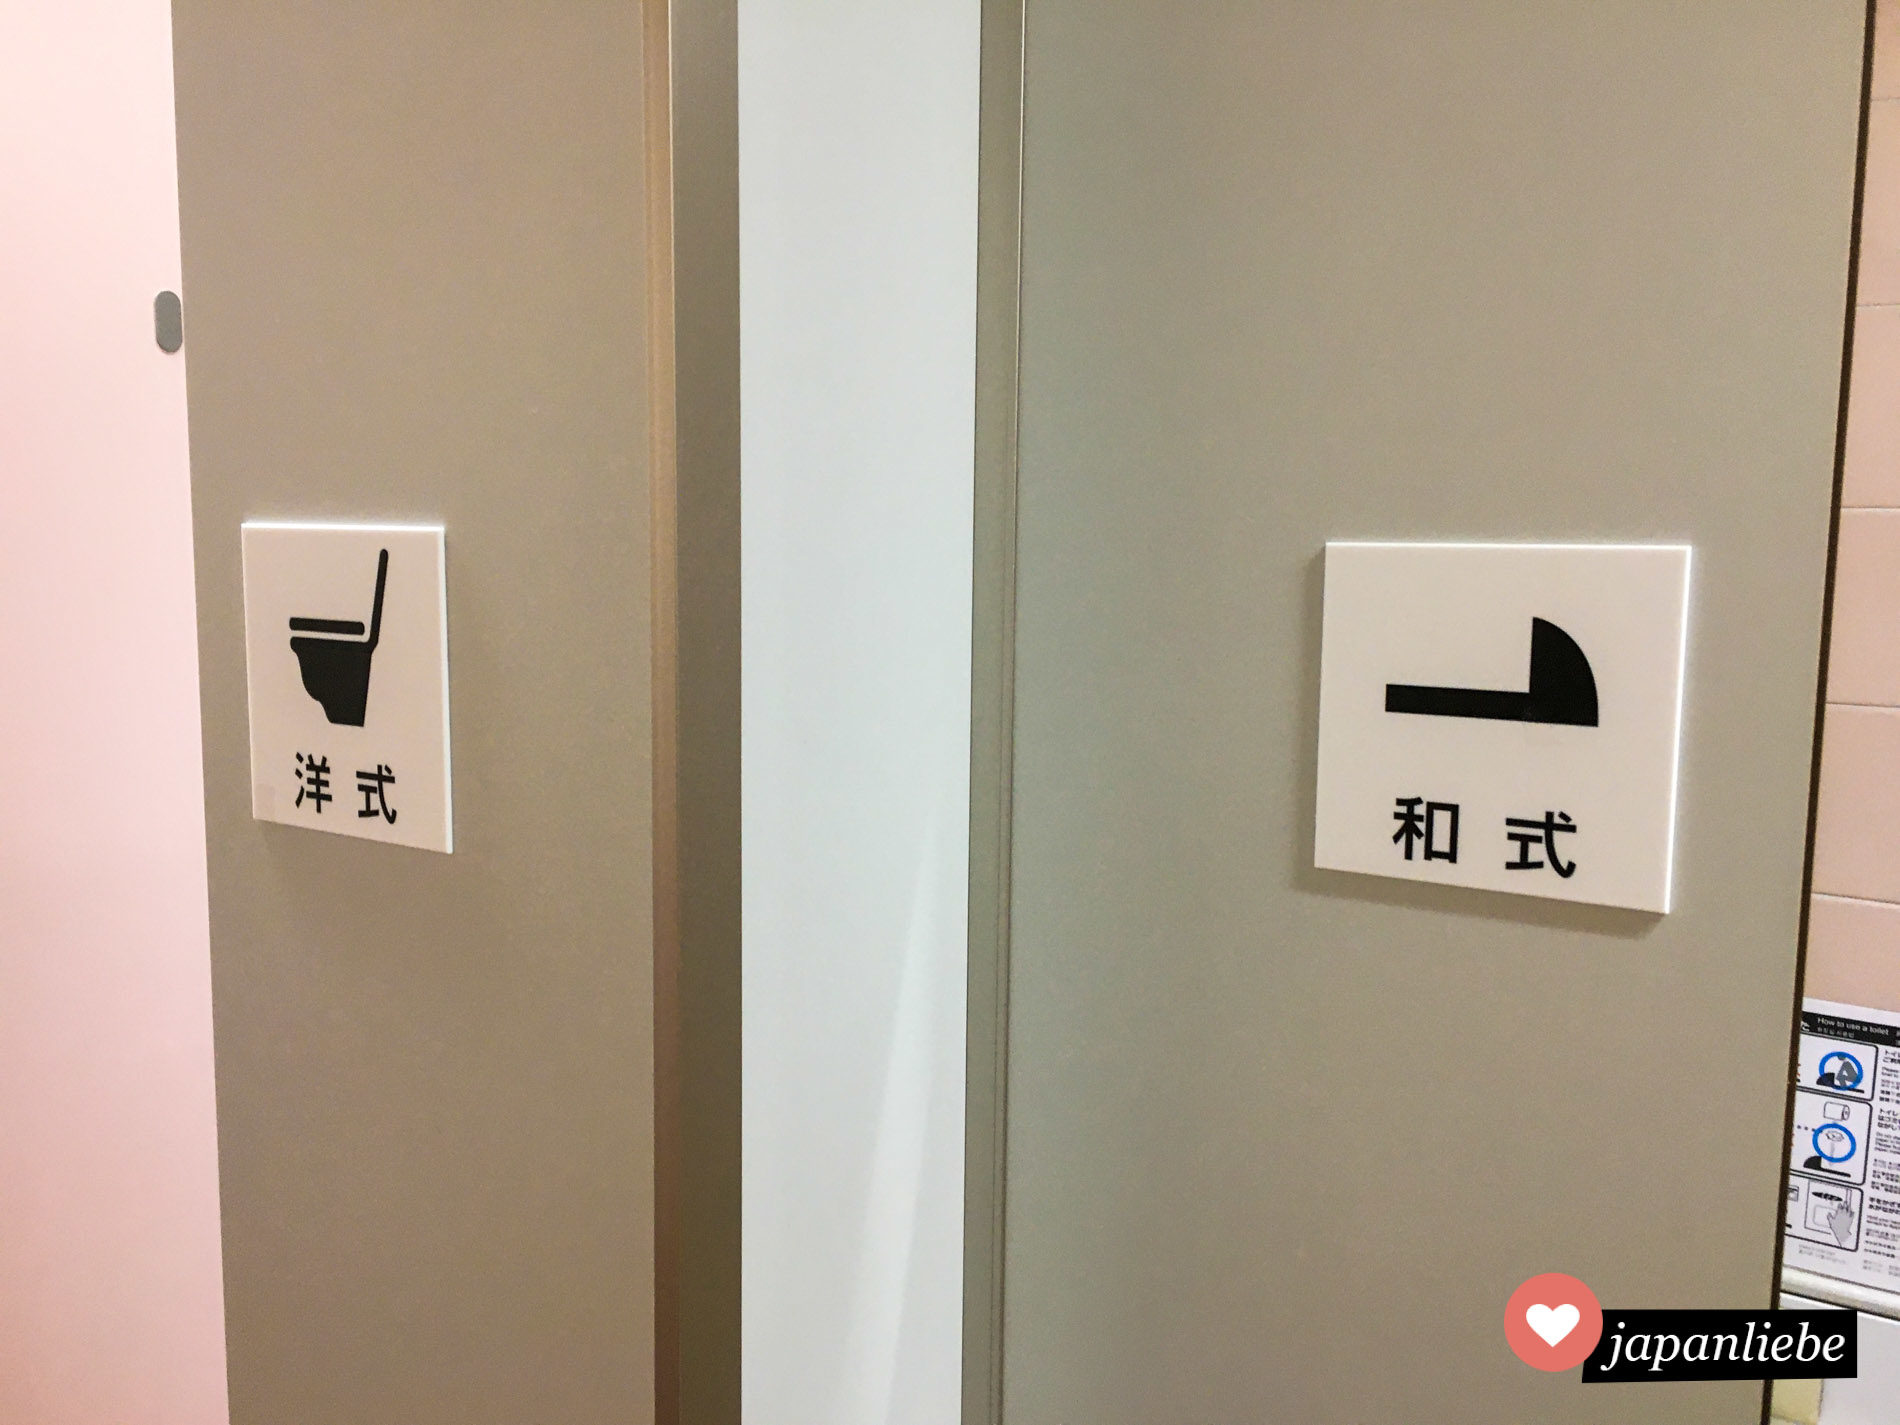 Schilder an der Tür zeigen an, in welcher Kabine man eine westliche, in welcher eine klassisch japanische Hocktoilette findet.